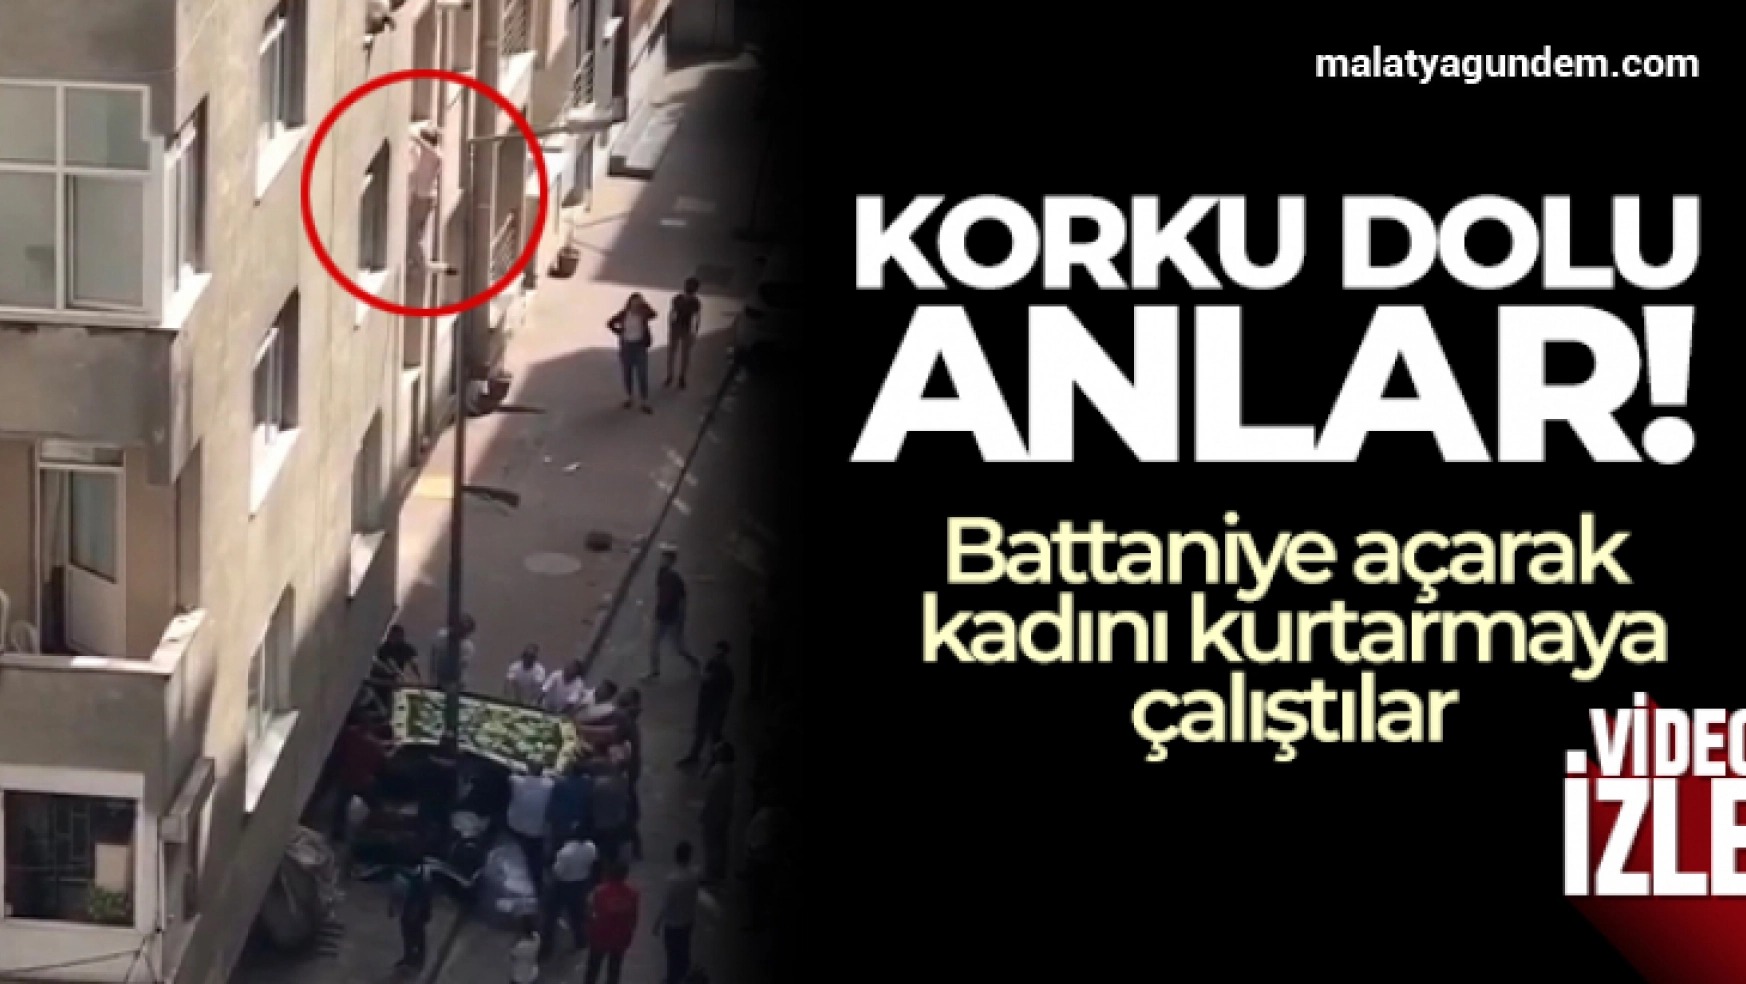 İstanbul'da korku dolu anlar kamerada: Battaniye açarak kadını kurtarmaya çalıştılar